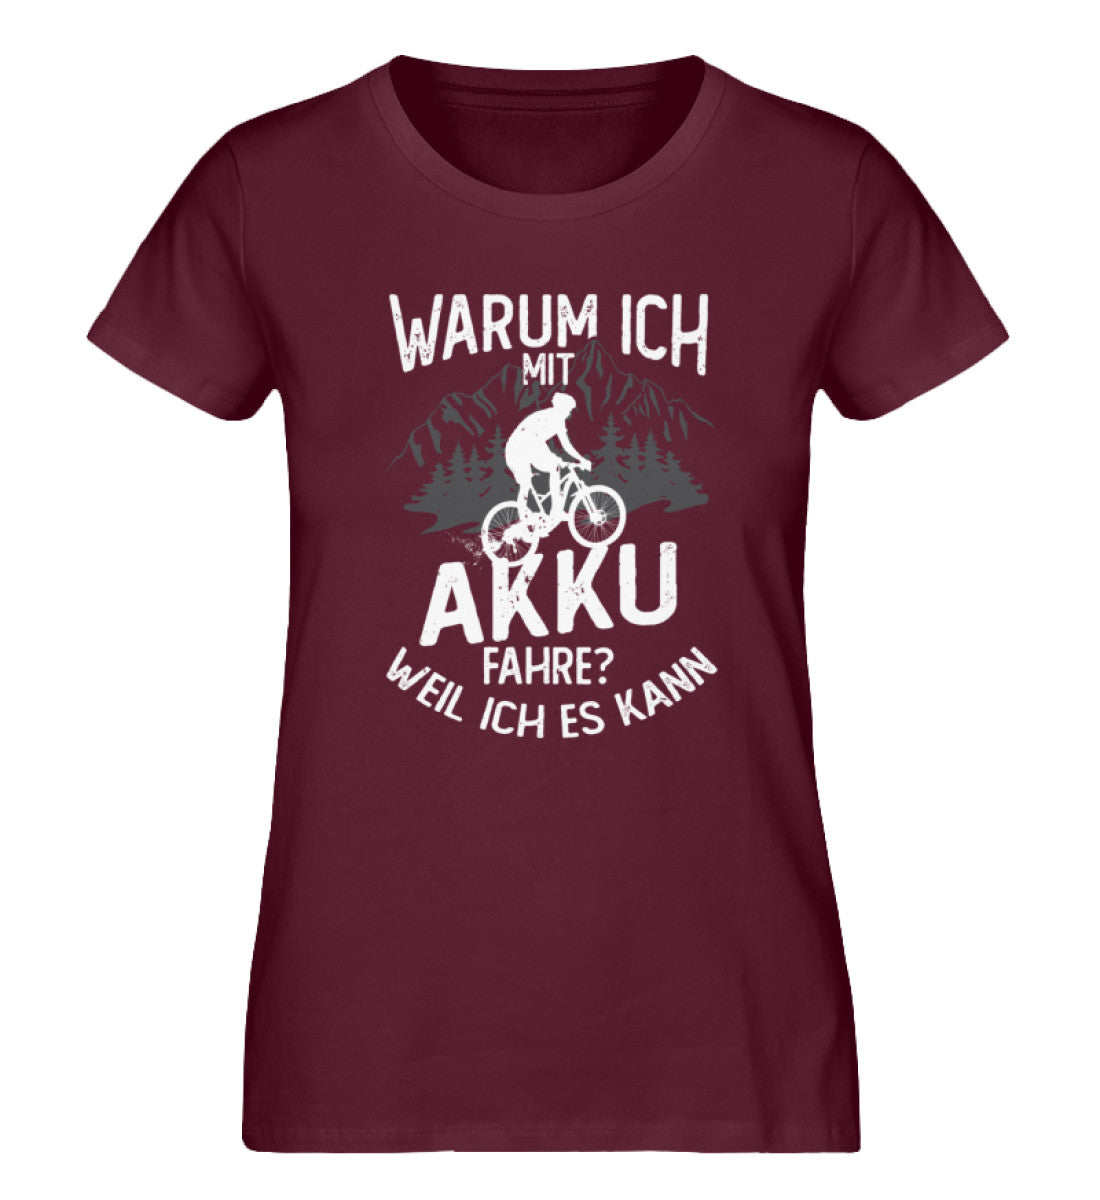 Warum ich mit Akku fahre - Weil ich kann - Damen Premium Organic T-Shirt e-bike Weinrot